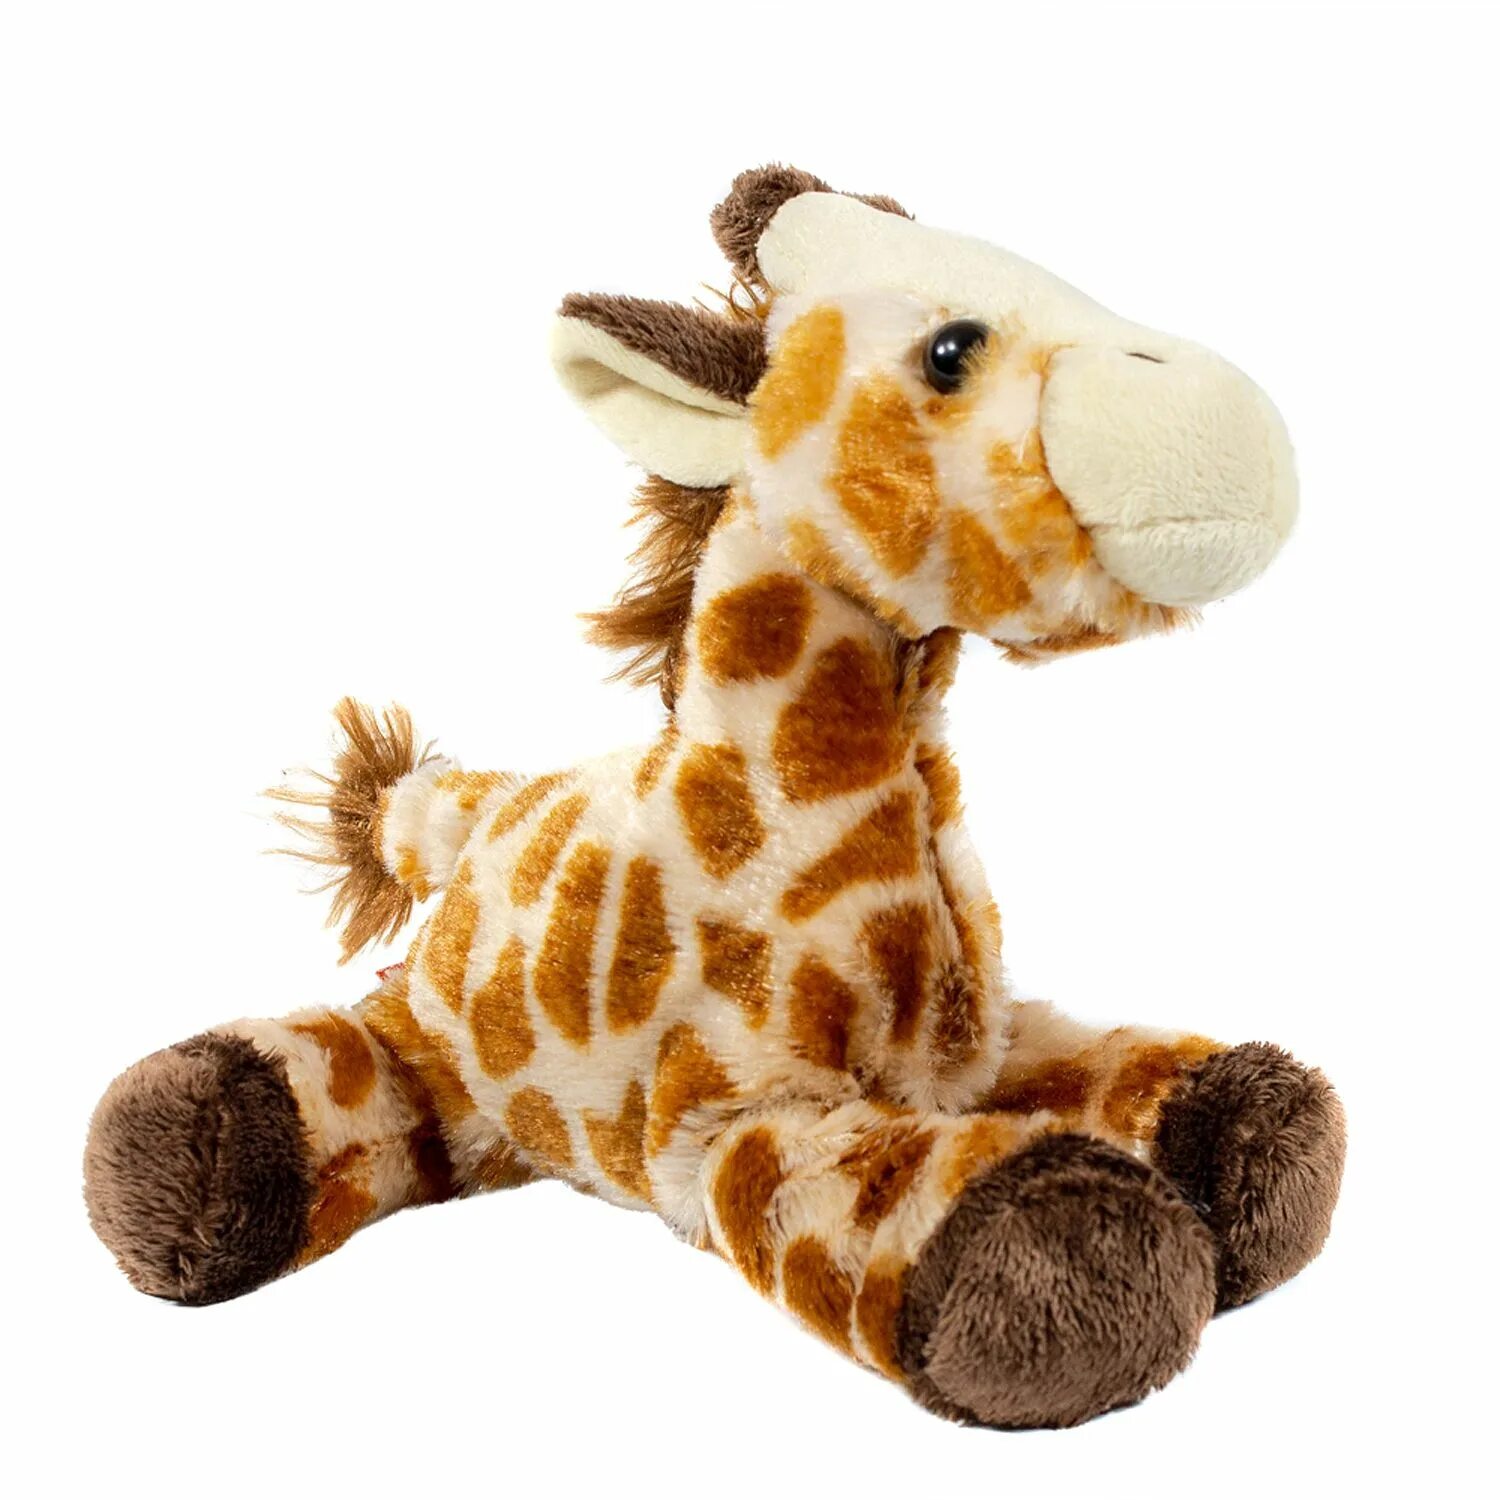 Мягкая игрушка ty Pluffies Жираф TIPTOP 25 см. Wild Republic игрушки. Hansa Жираф 64 см. Мягкая игрушка WWF Жираф 18 см. Купить жирафа игрушку